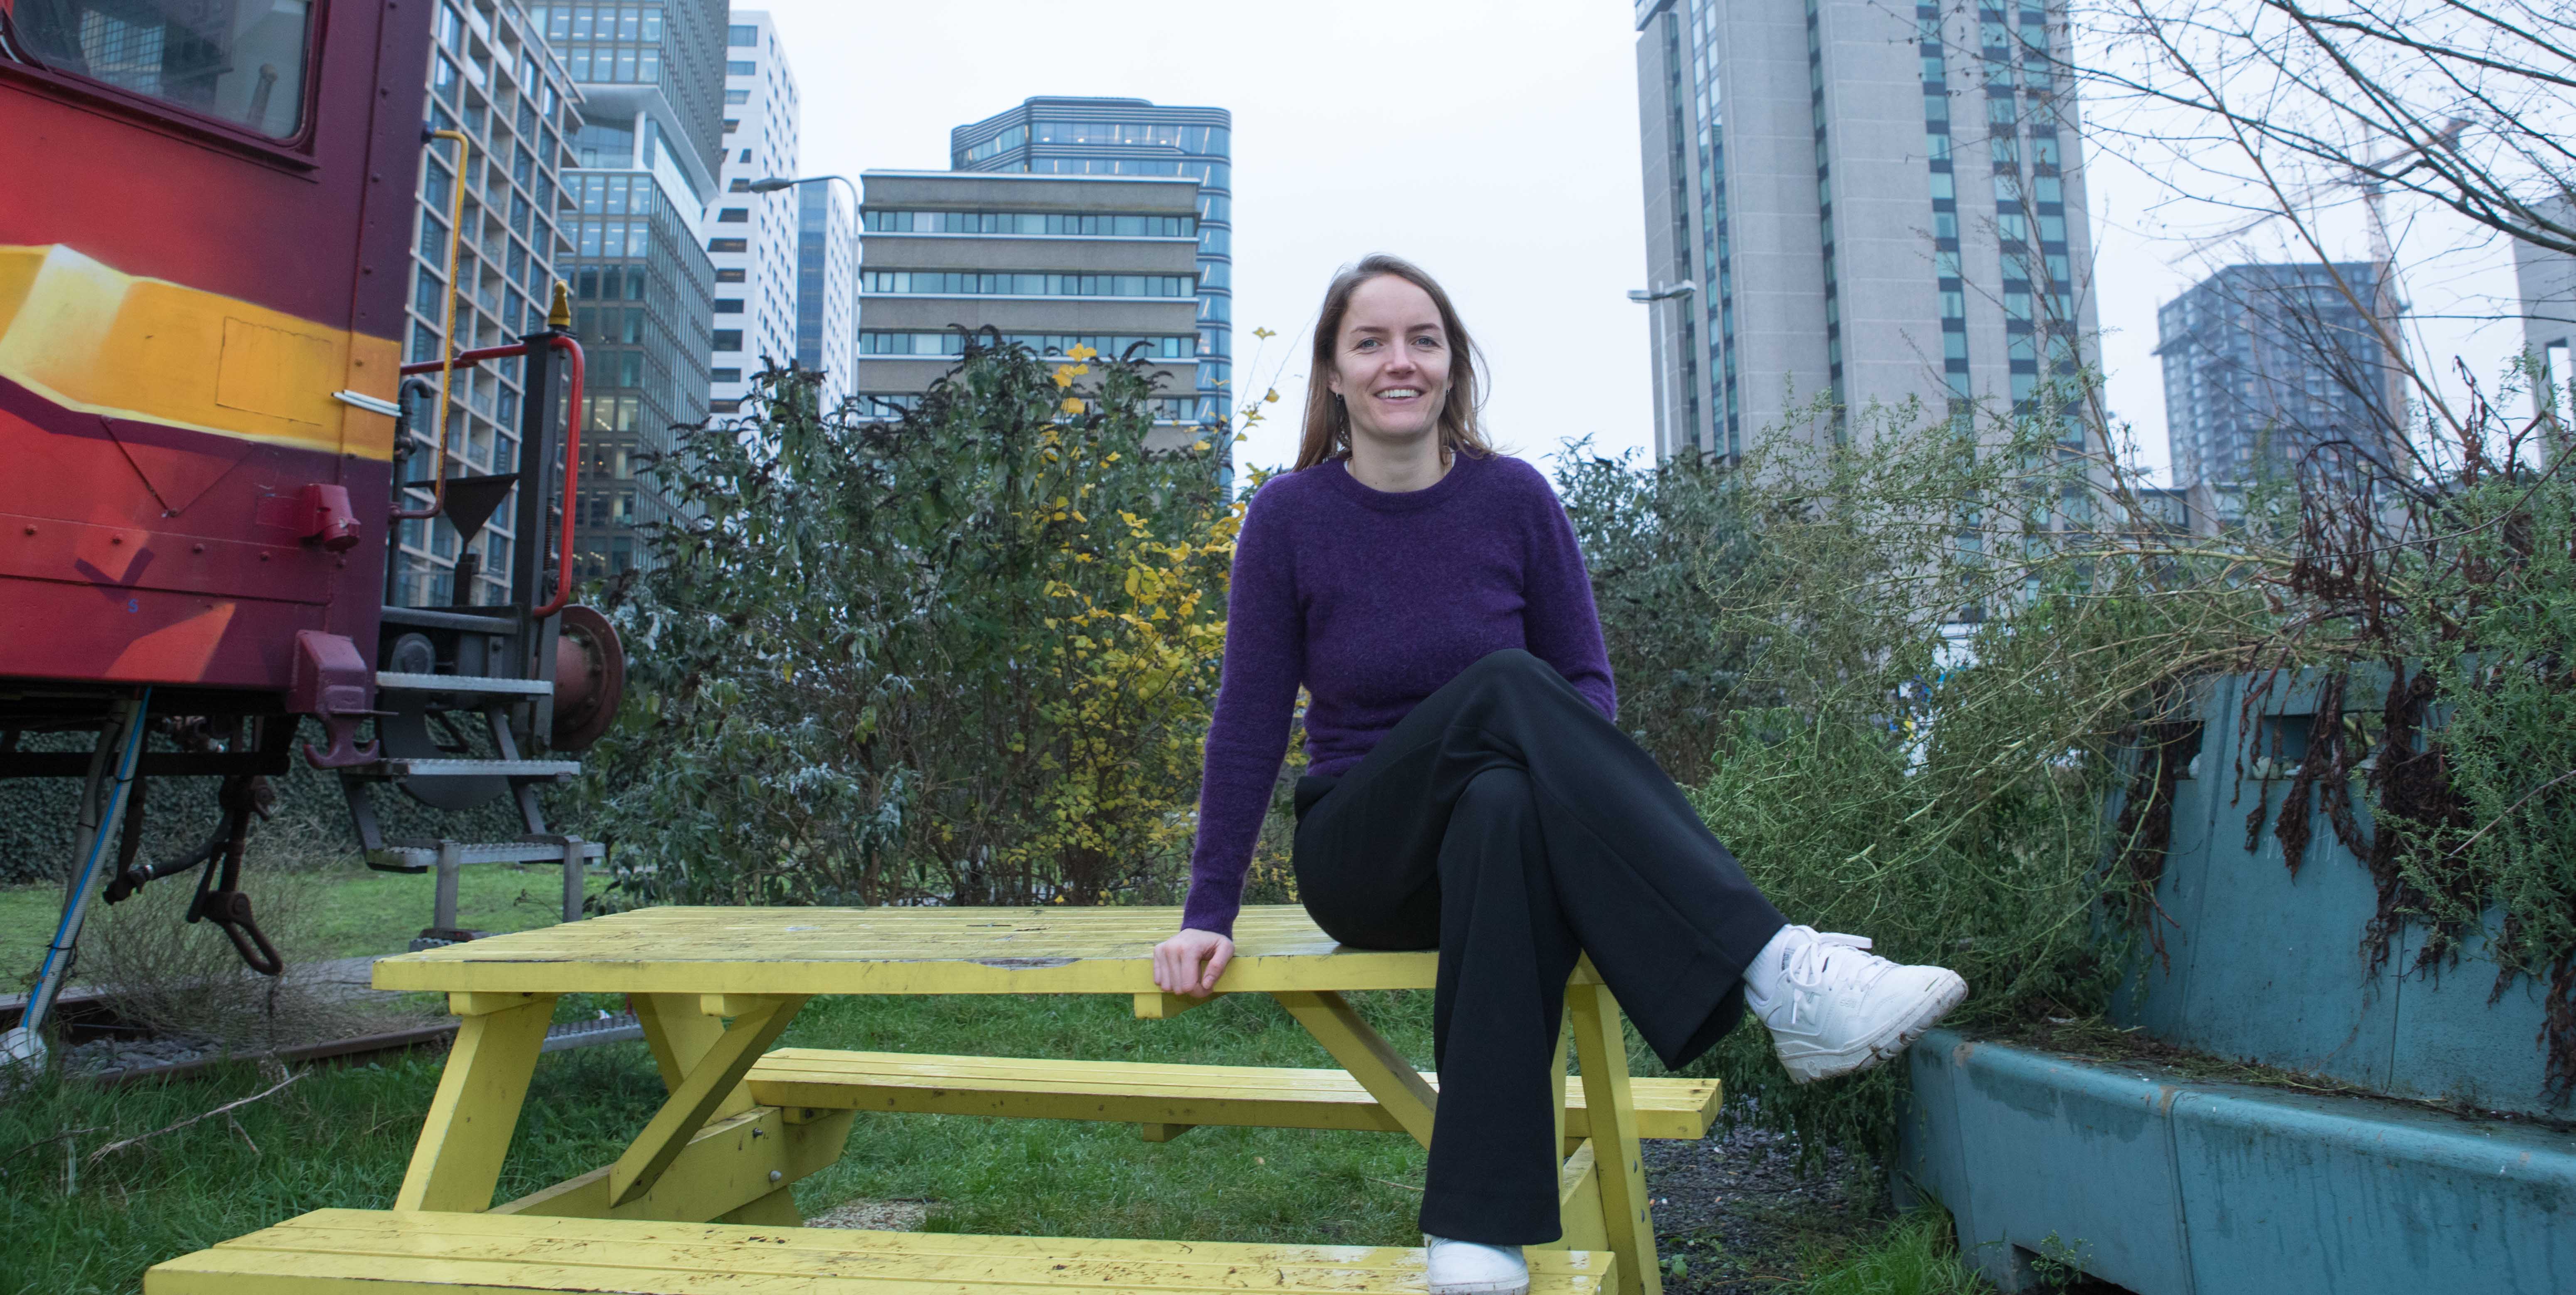 Marthe, lid van het Stadsteam, zit op een geel bankje voor haar portretfoto.